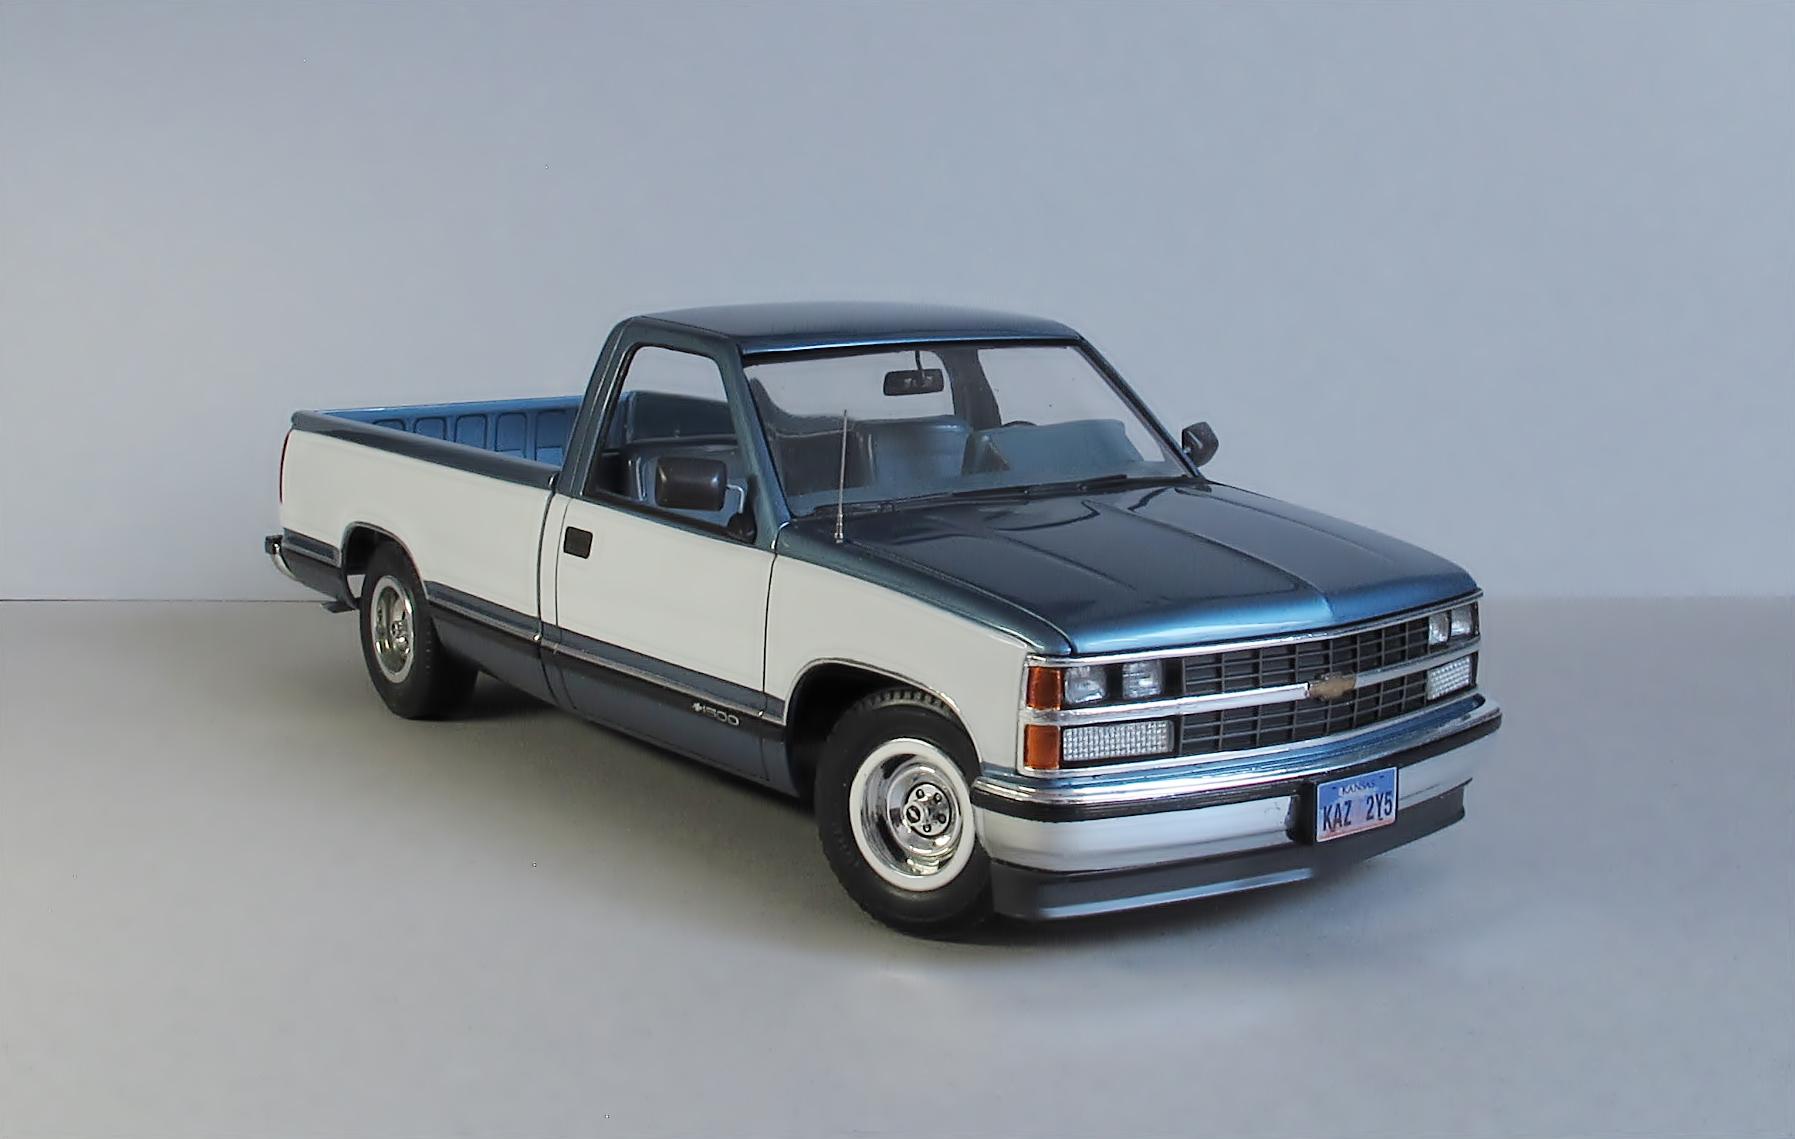 Chevrolet Silverado C-1500 - Model Trucks: Pickups, Vans, SUVs, Light